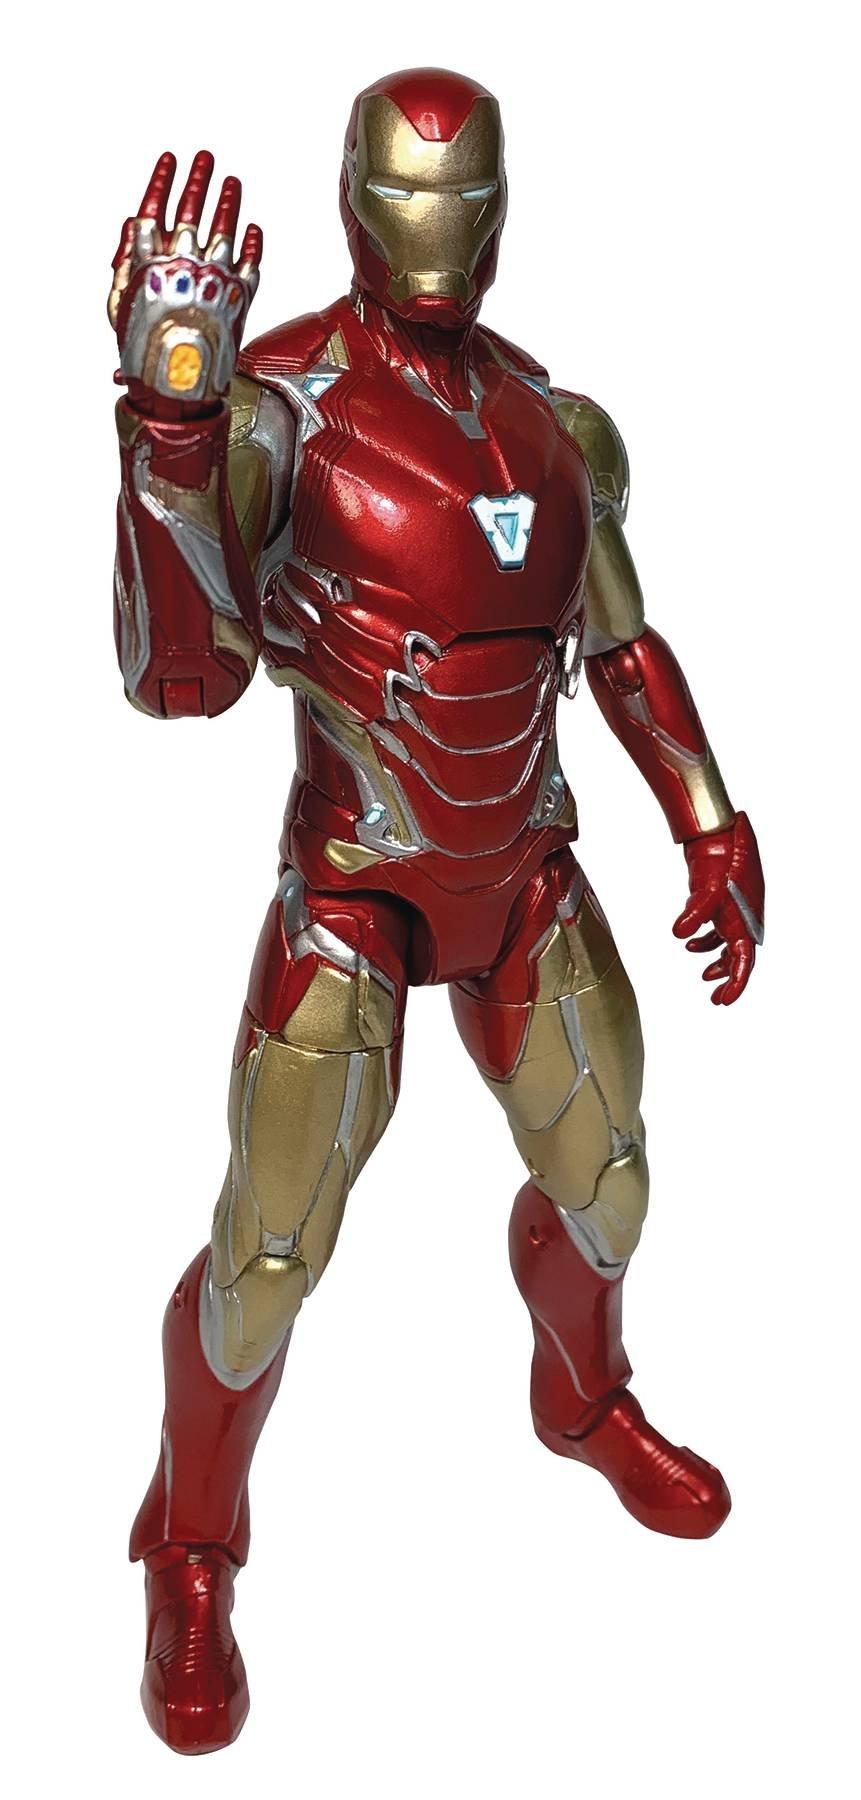 Endgame Iron Man Mark 85 Armor Action 